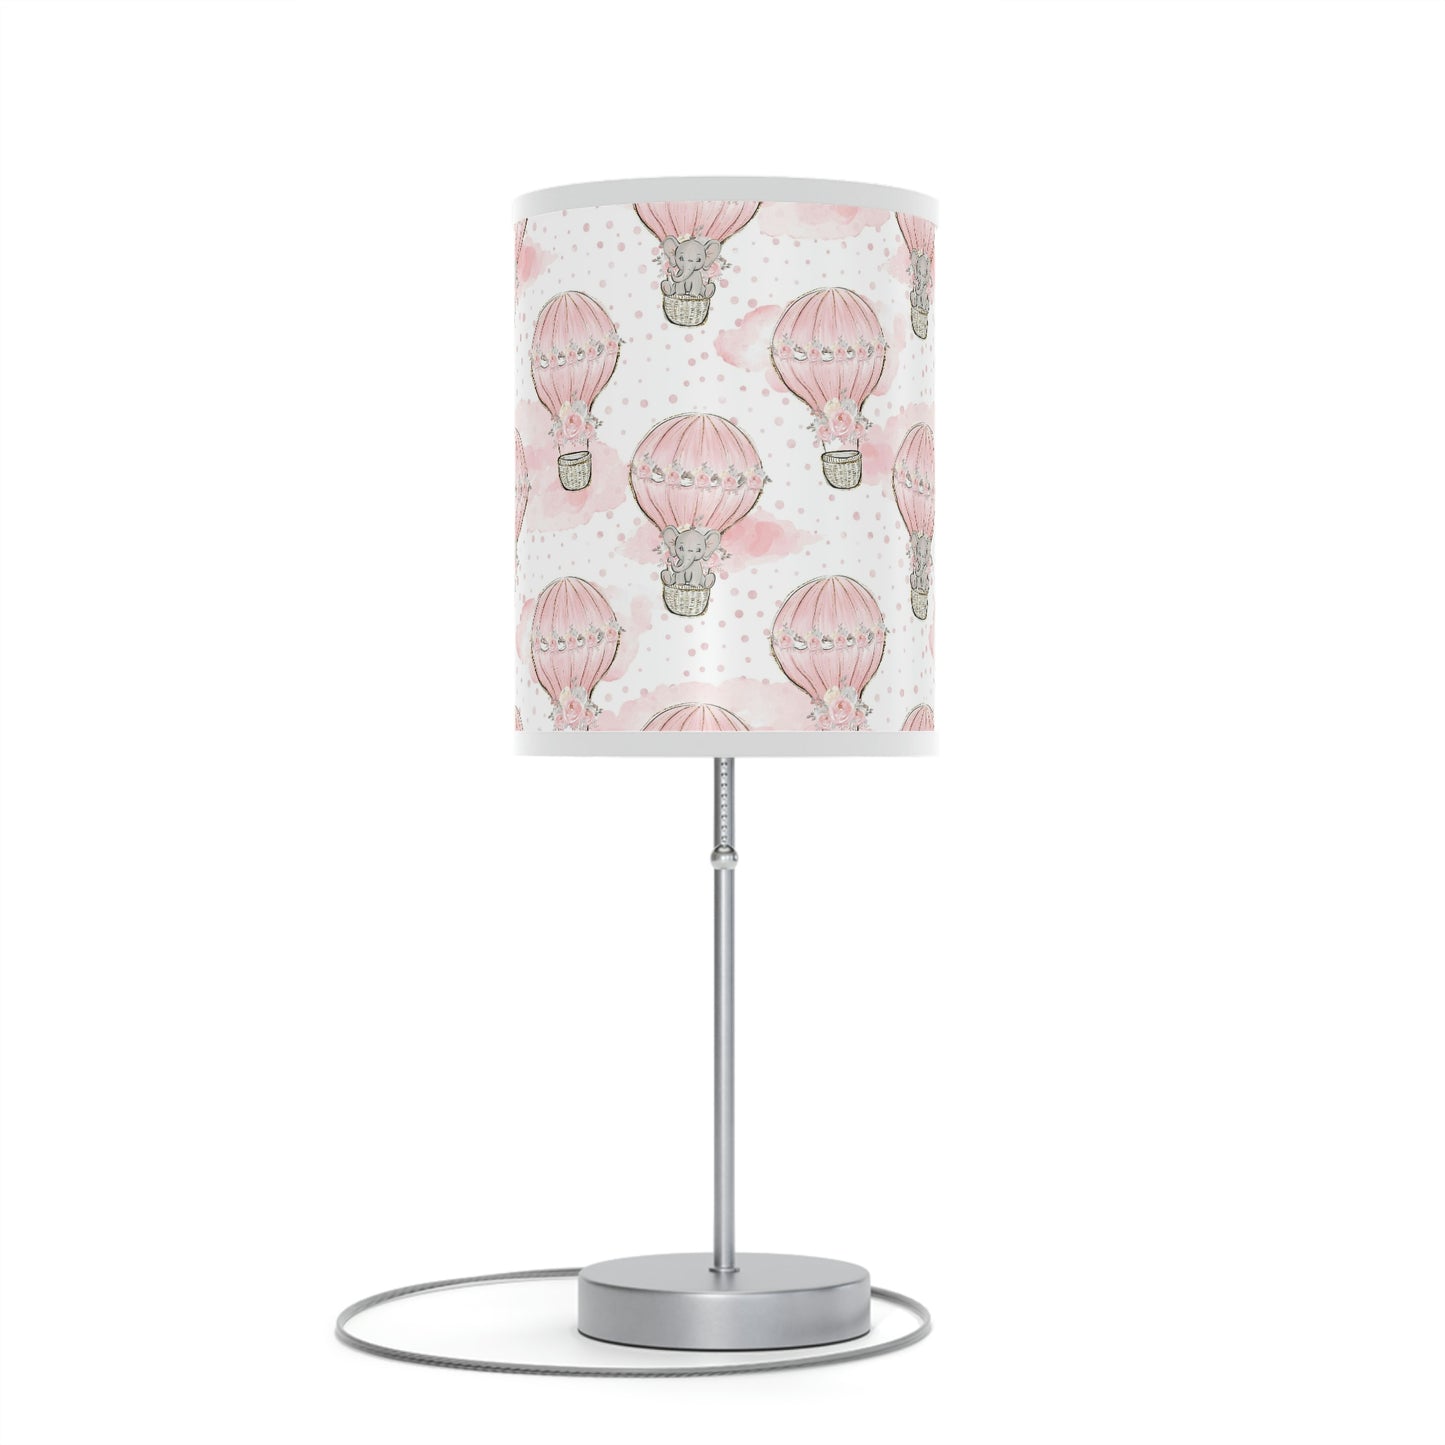 hot air balloon nursery lamp, elephant nursery lamp, nursery lamp, table lamp, light for nursery